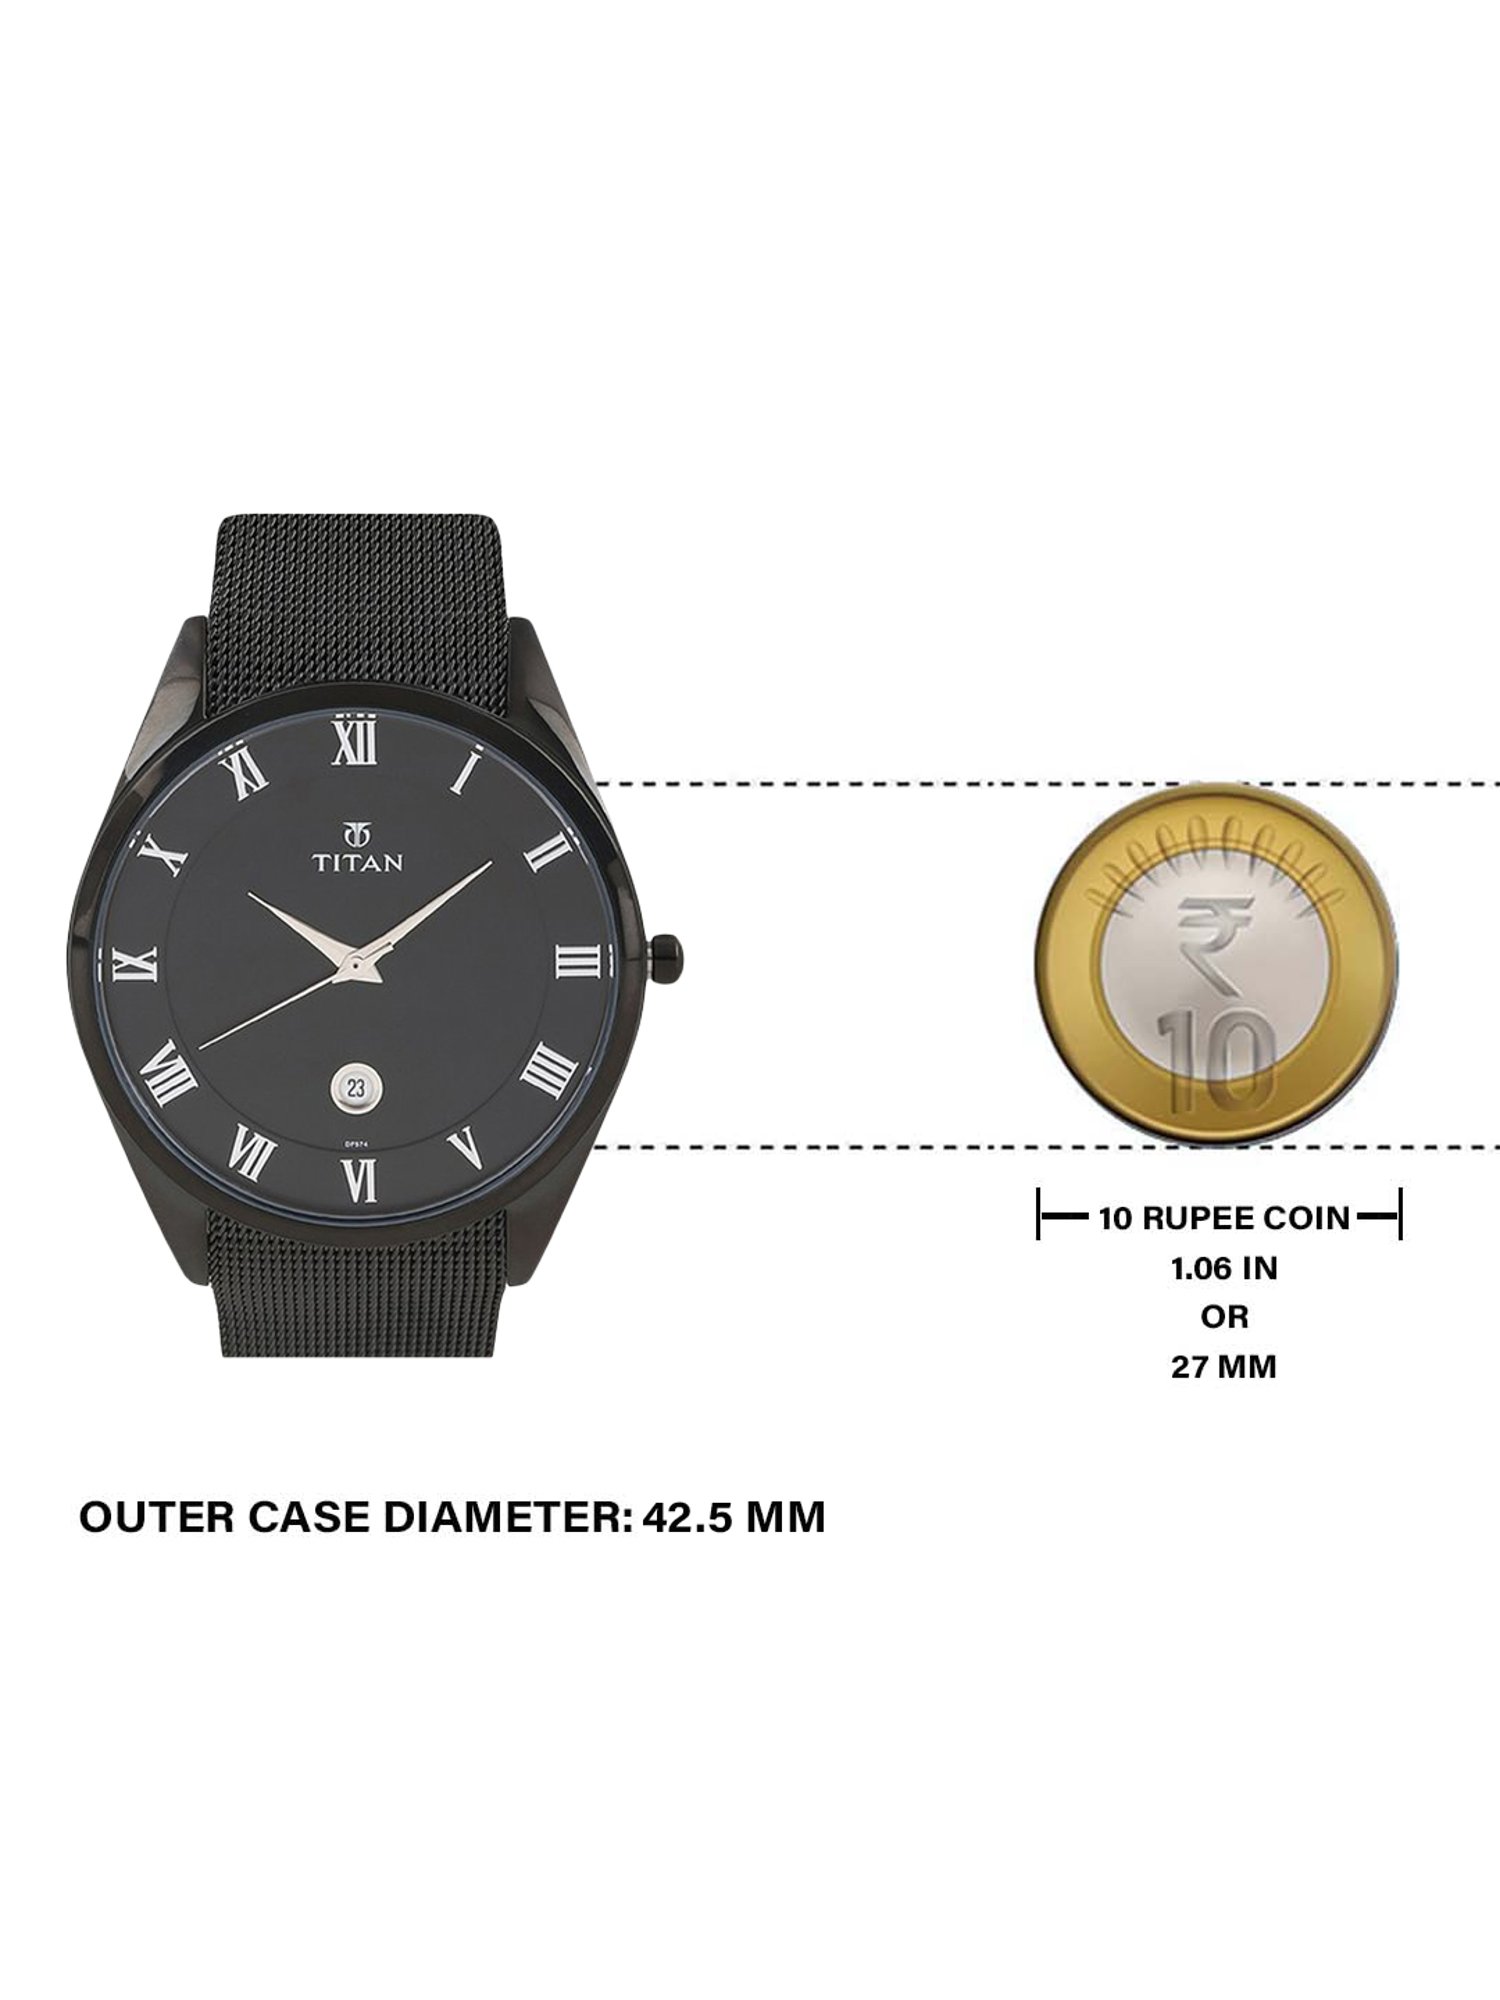 RADO 01.111.0528.3.015 Watch in Delhi at best price by Indostar Watch Co. -  Justdial